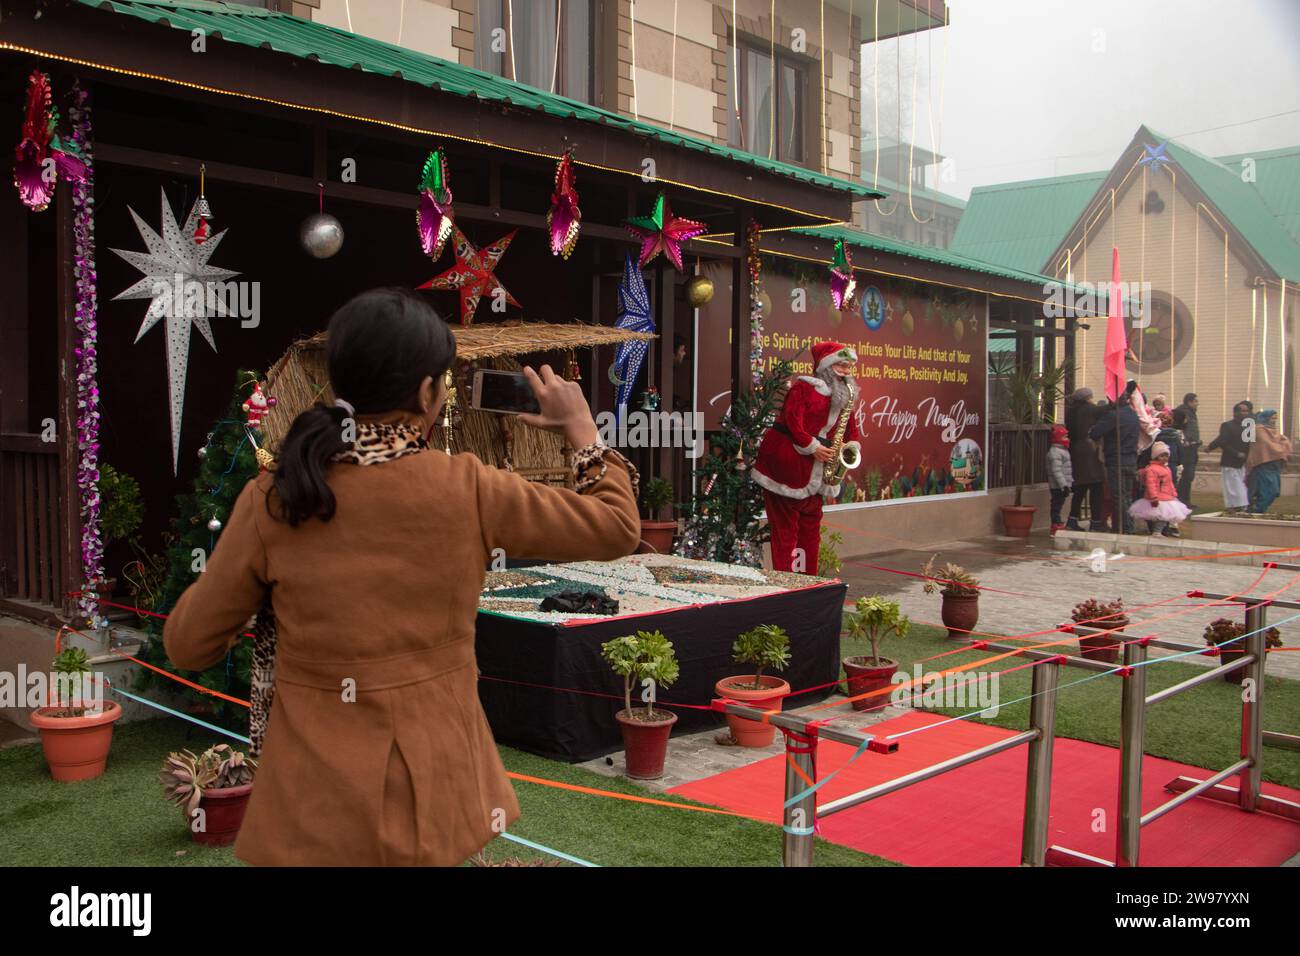 Srinagar, Kaschmir, Indien. Dezember 2023. Ein Mädchen wird gesehen, wie er vor dem Weihnachtsfest in Srinagar Fotos von dem Weihnachtsmann macht. (Kreditbild: © Adil Abbas/ZUMA Press Wire) NUR REDAKTIONELLE VERWENDUNG! Nicht für kommerzielle ZWECKE! Stockfoto